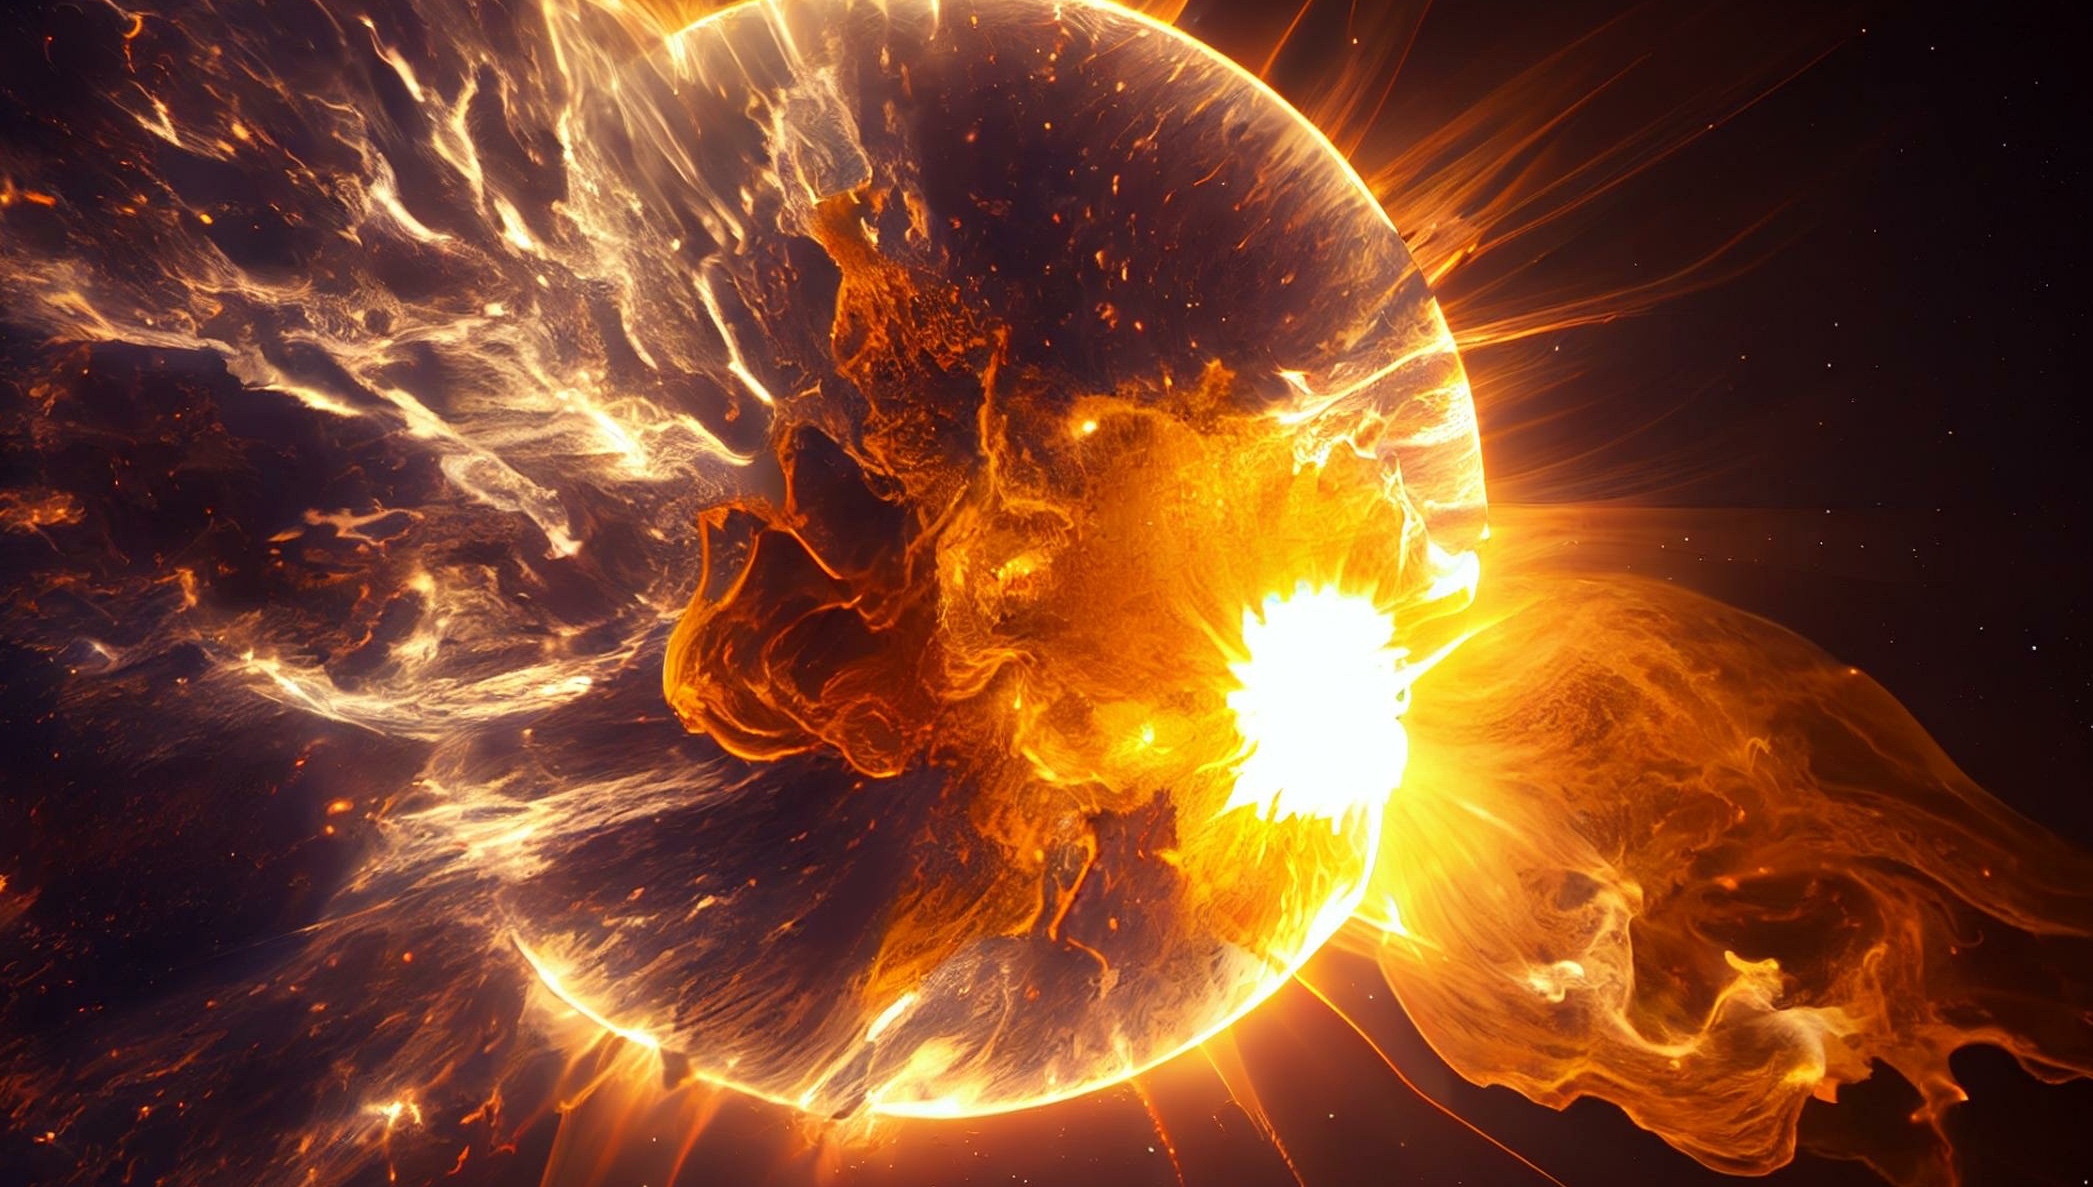 Des chercheurs de la Nasa envisagent que l’activité intense de notre Soleil pendant les premières années de notre Terre a pu aider la vie à apparaître sur notre Planète. Image générée par une IA. © Made, Adobe Stock